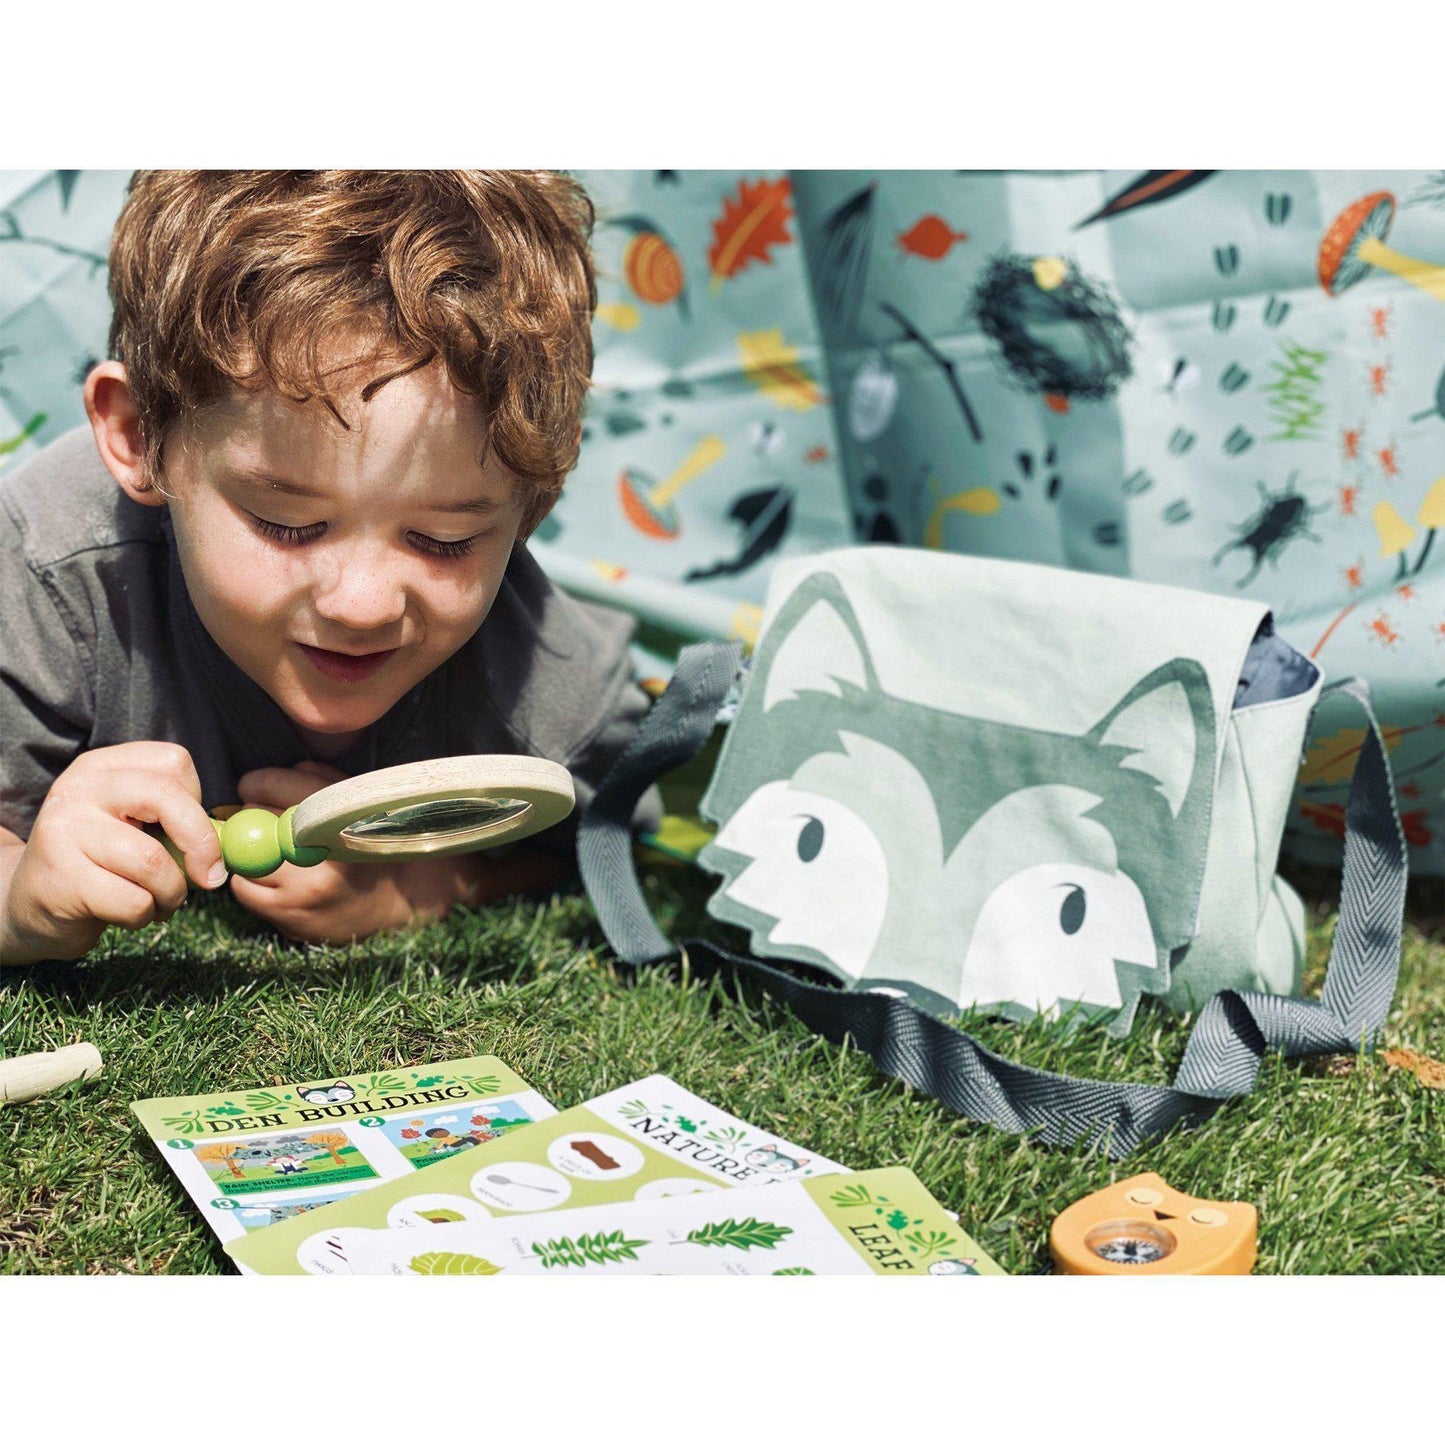 Erdei kiránduló készlet, prémium minőségű fából - Forest Trail Kit - 10 darab - Tender Leaf Toys-Tender Leaf Toys-9-Játszma.ro - A maradandó élmények boltja